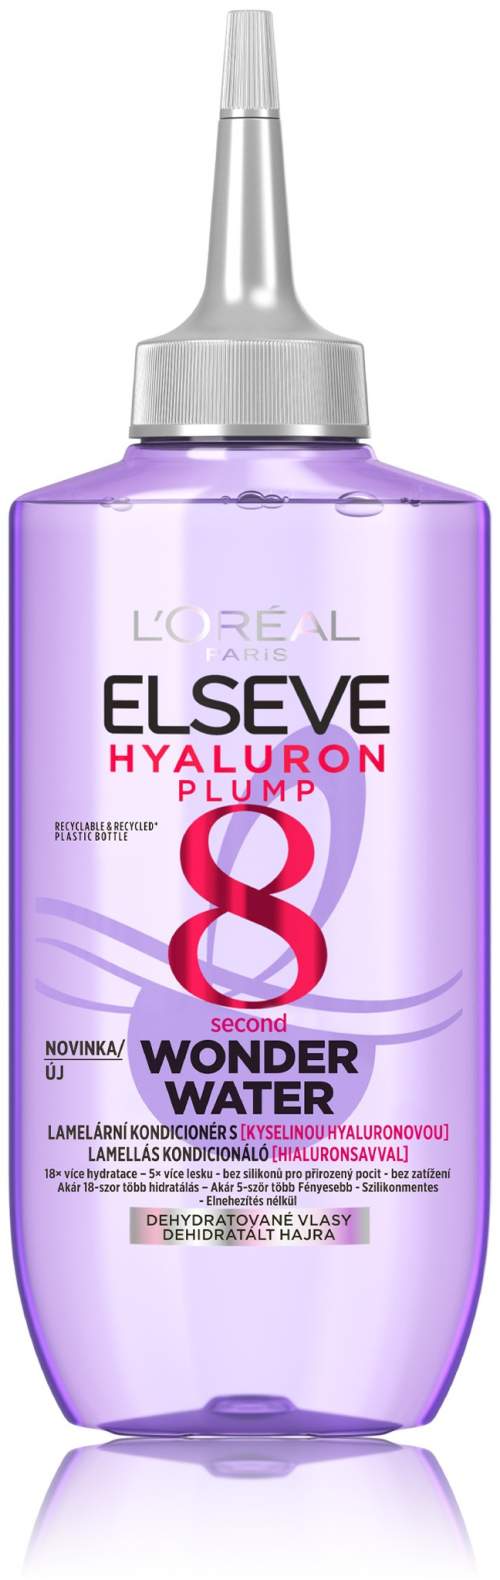 L'Oréal Paris Elseve Hyaluron Plump 8 Second Wonder Water lamelární kondicionér pro intenzivní hydrataci vlasů 200 ml pro ženy